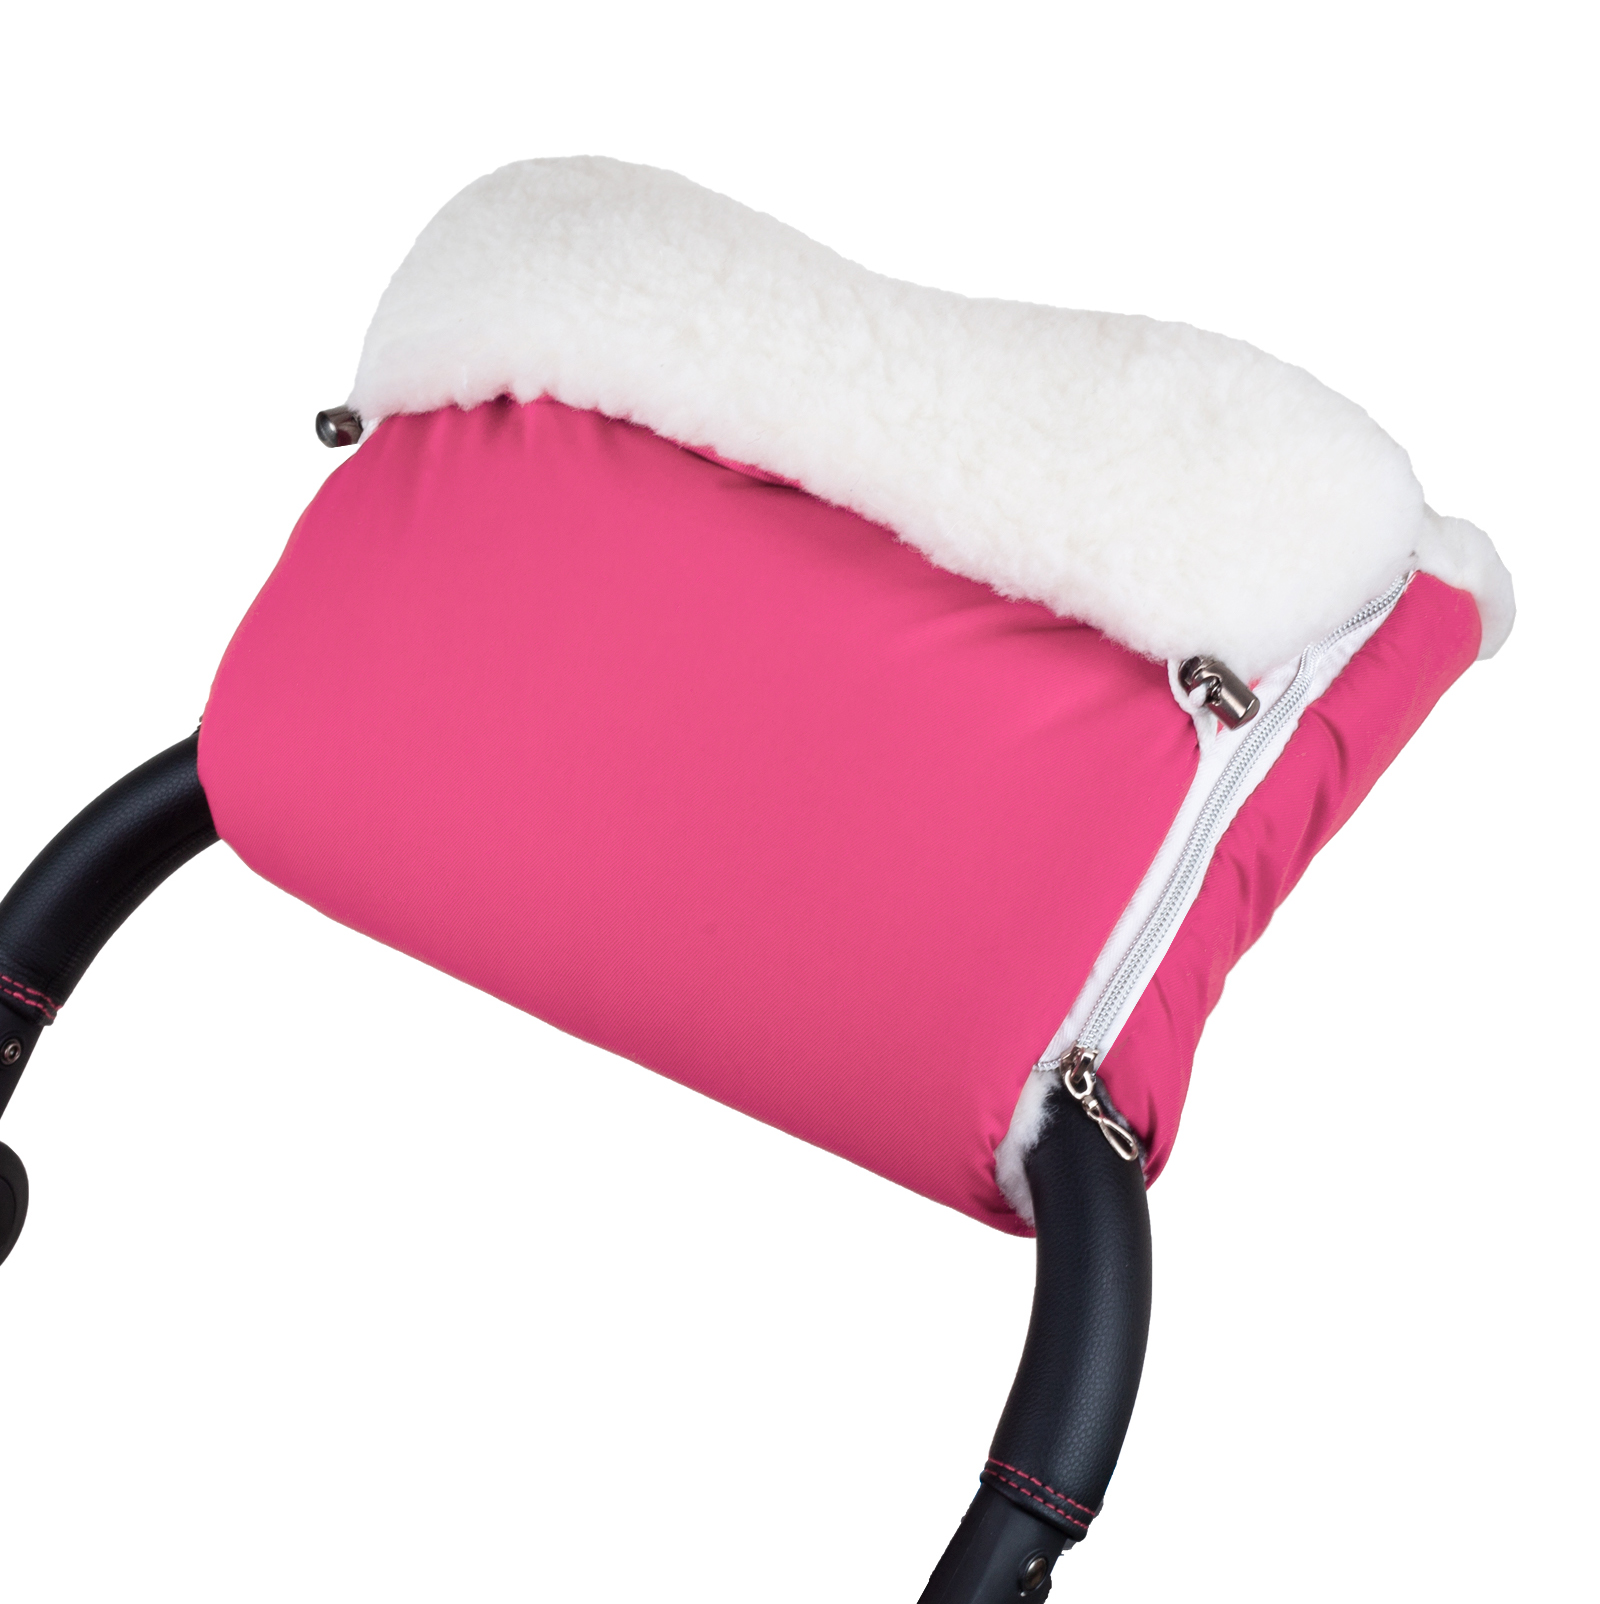 Муфта для рук на коляску BEATRICE BAMBINI Taddy, Pink 189920 муфта для рук на коляску esspero amato st pink натуральный мех